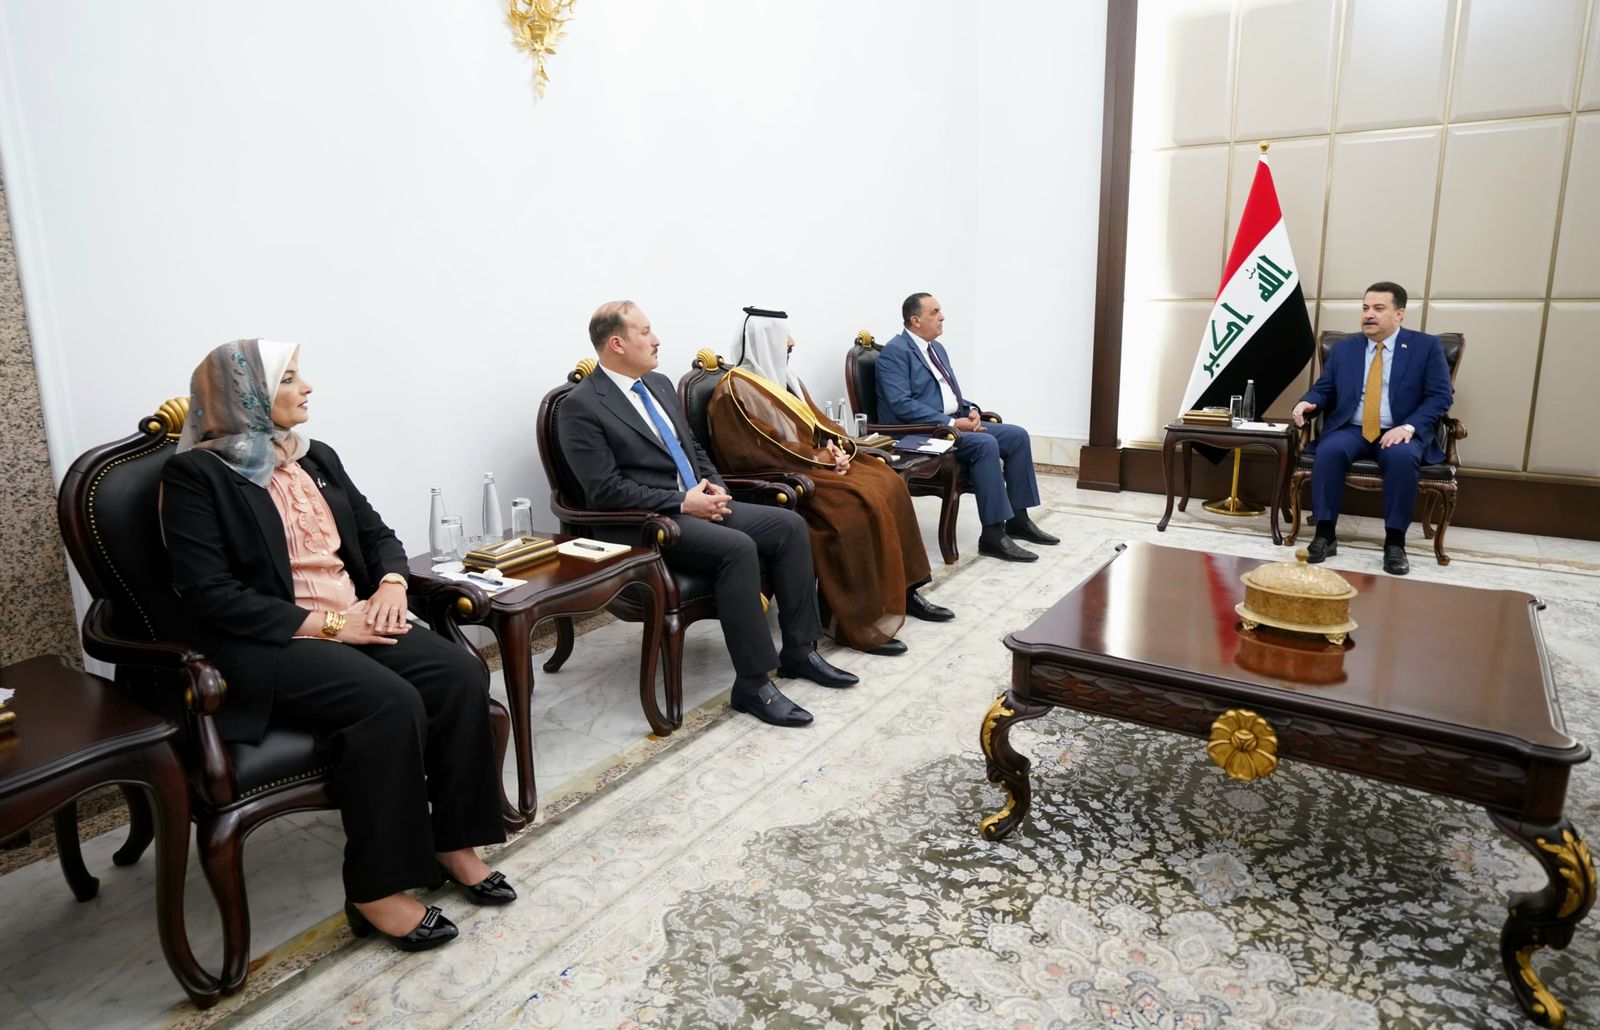 Al-Sudani stresses inclusive decision-making in Kirkuk government formation